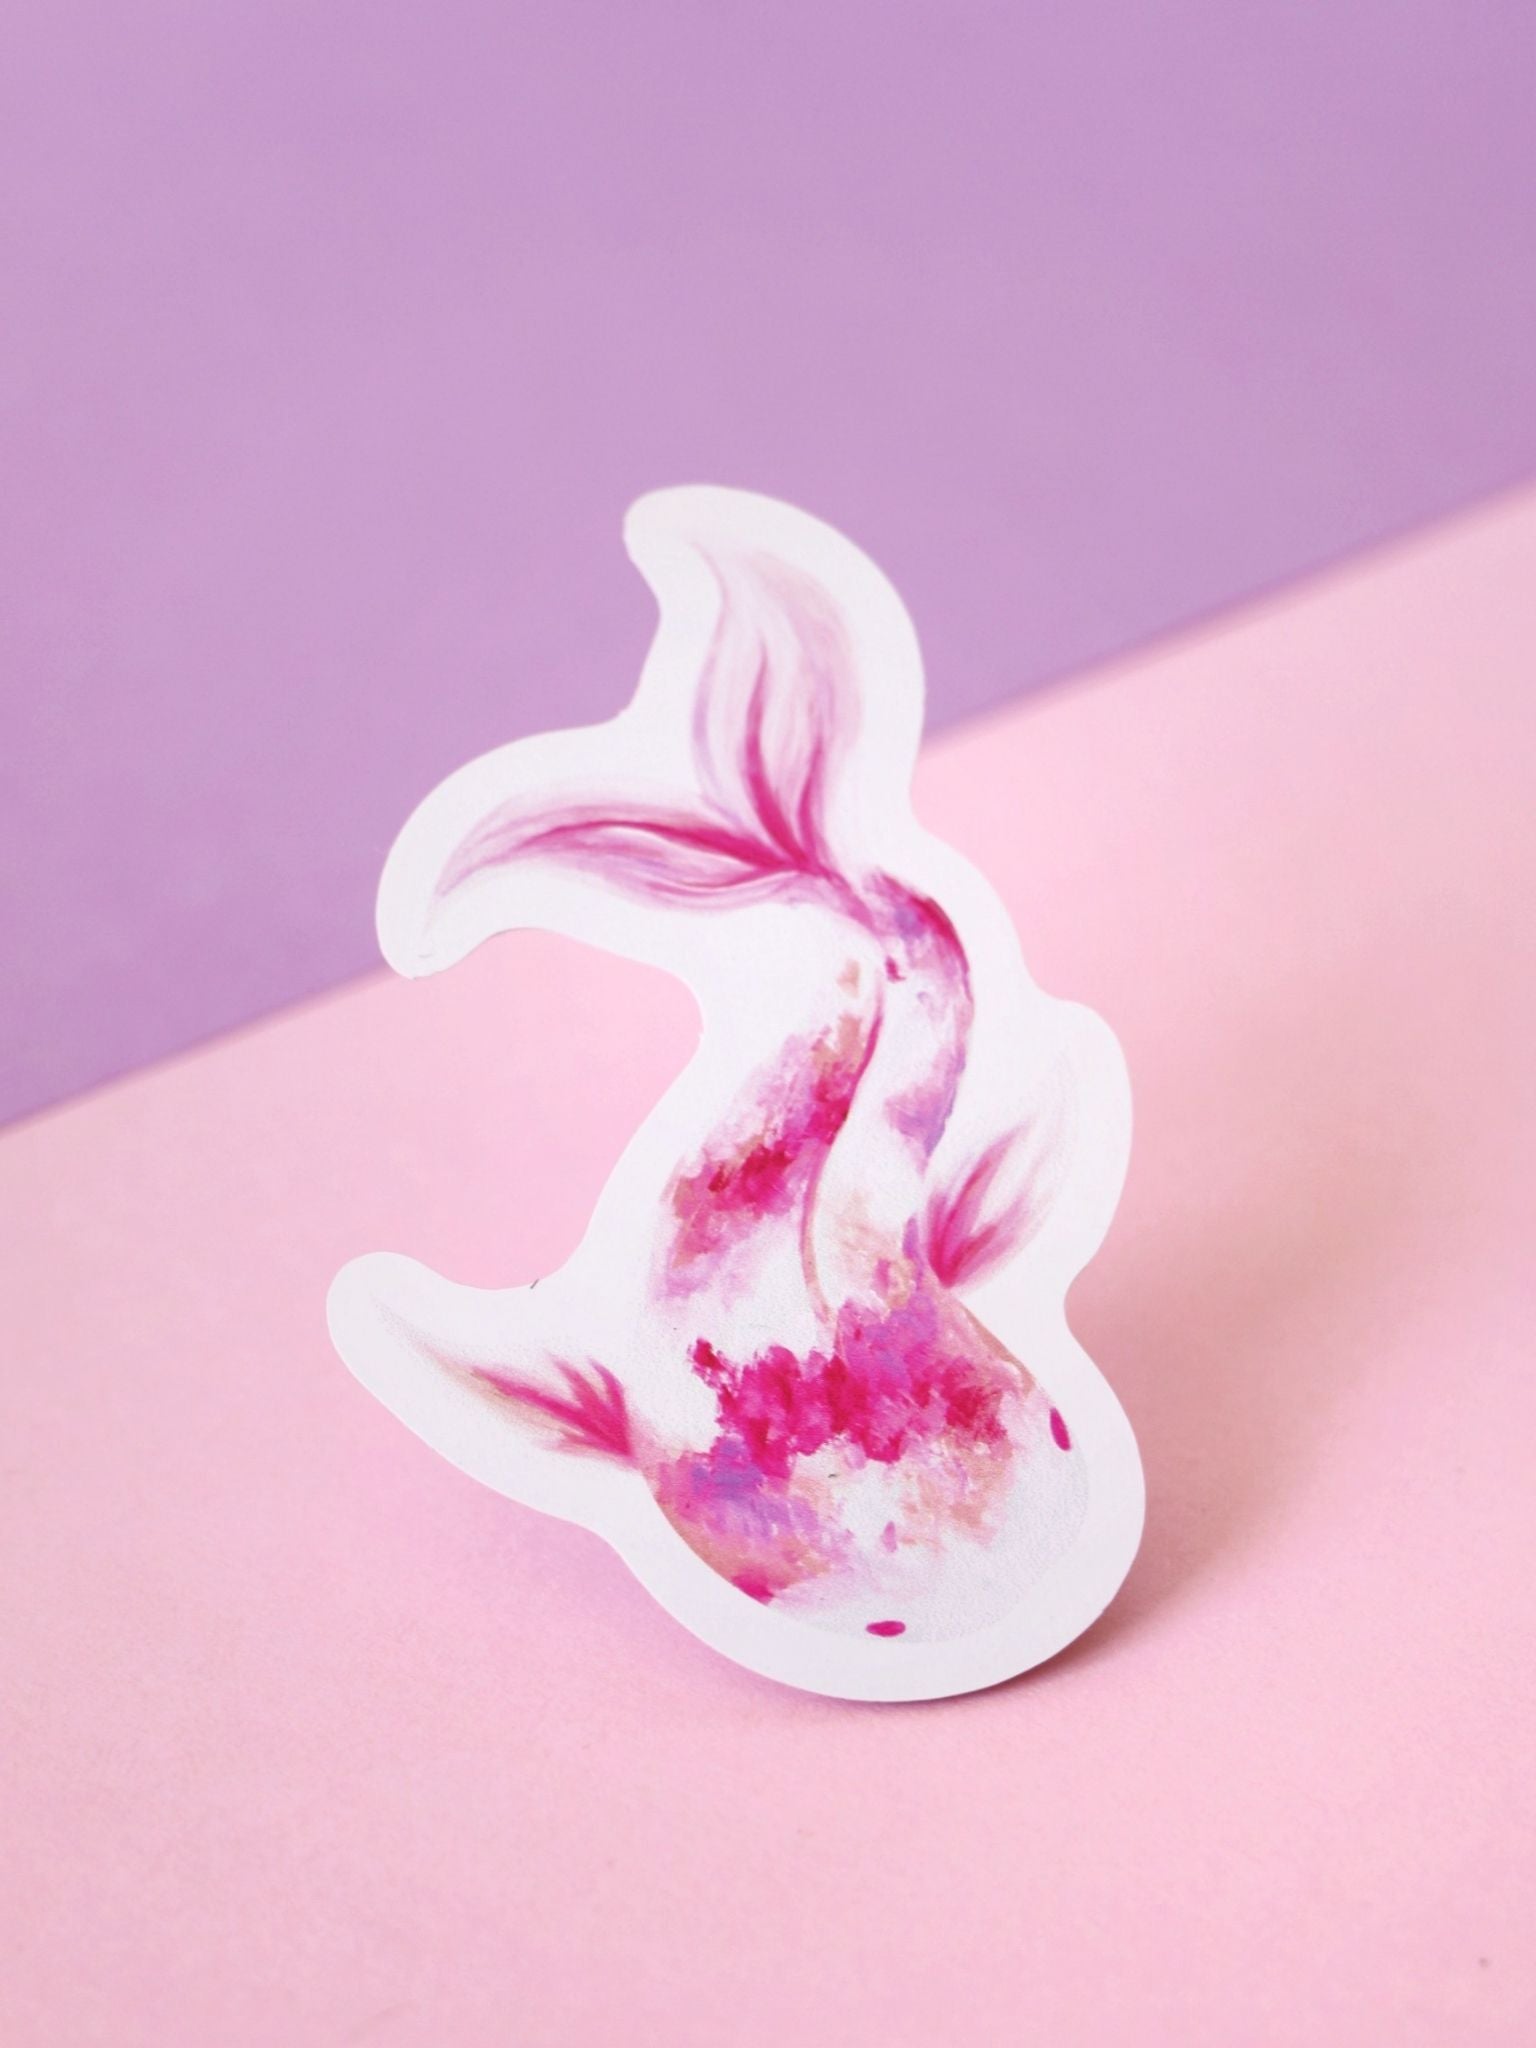 guardian-koi-fish-galaxy-pink-purple-white-sticker-acrylic-paint